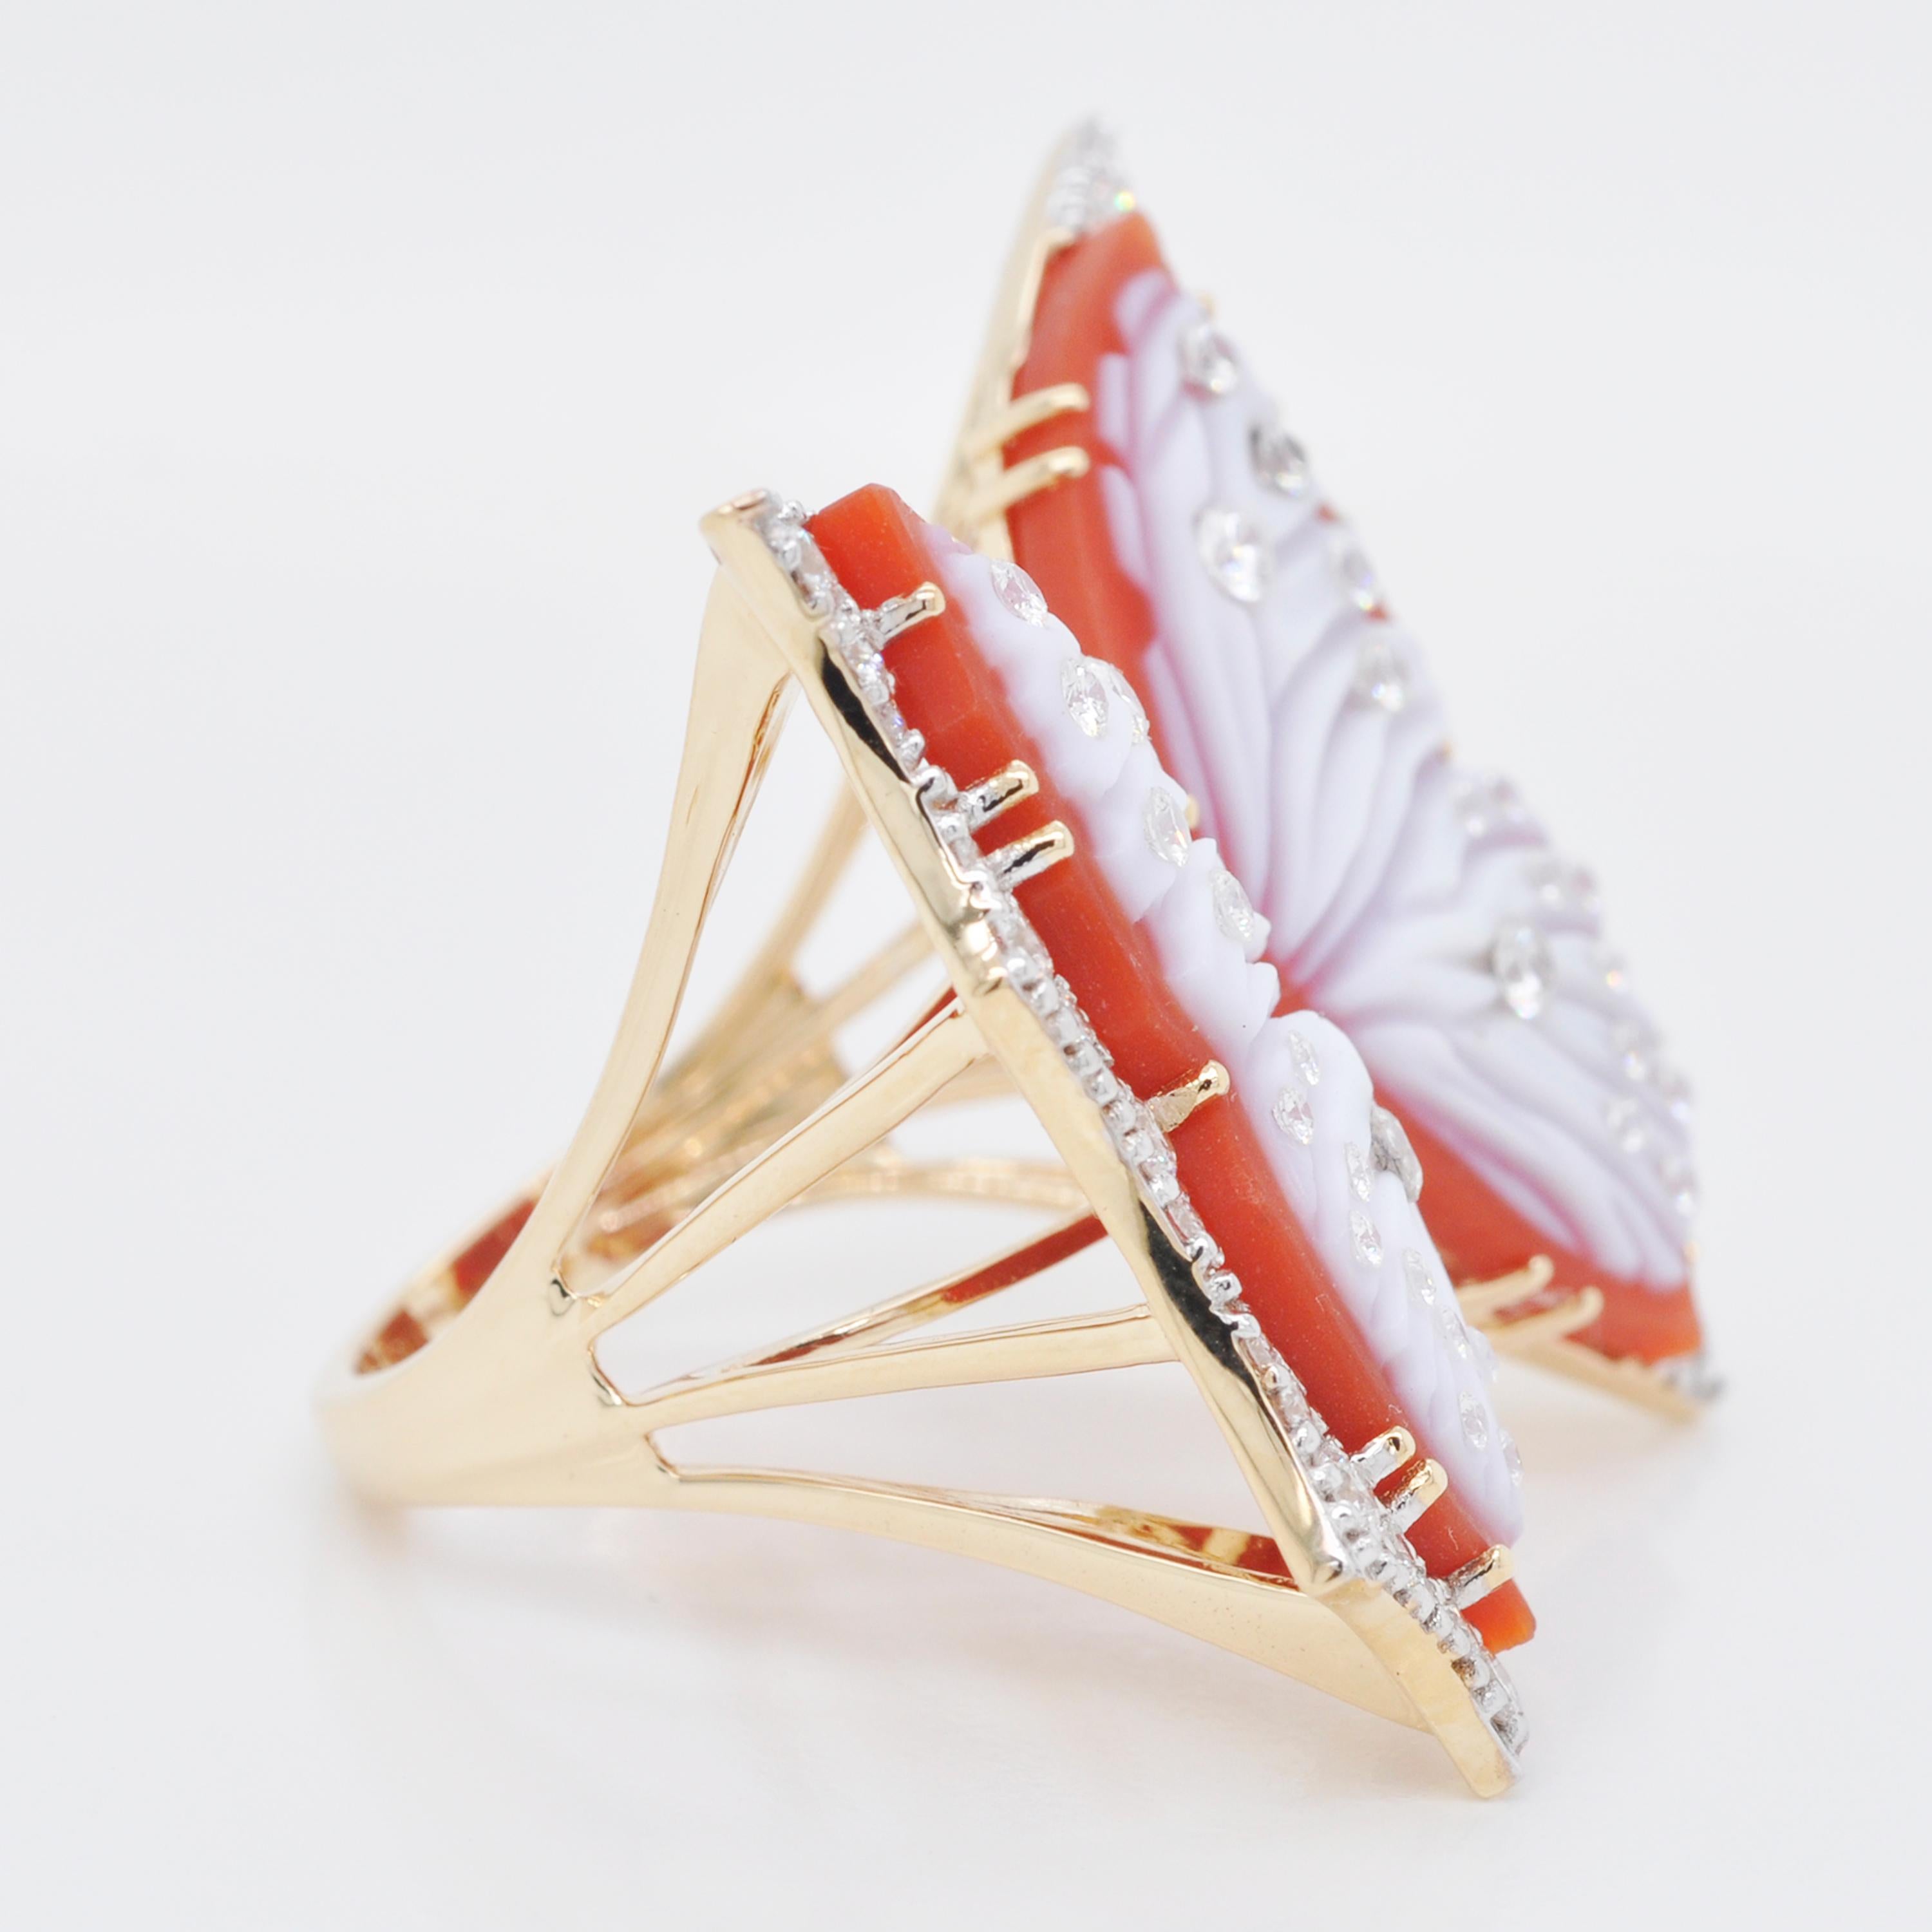 bague de cocktail contemporaine en or 18 carats sculptée à la main en agate rouge papillon et diamant.

Le processus de fabrication de cette bague en or 18k, sertie de diamants étincelants, a commencé comme celui d'un papillon. De même que la petite